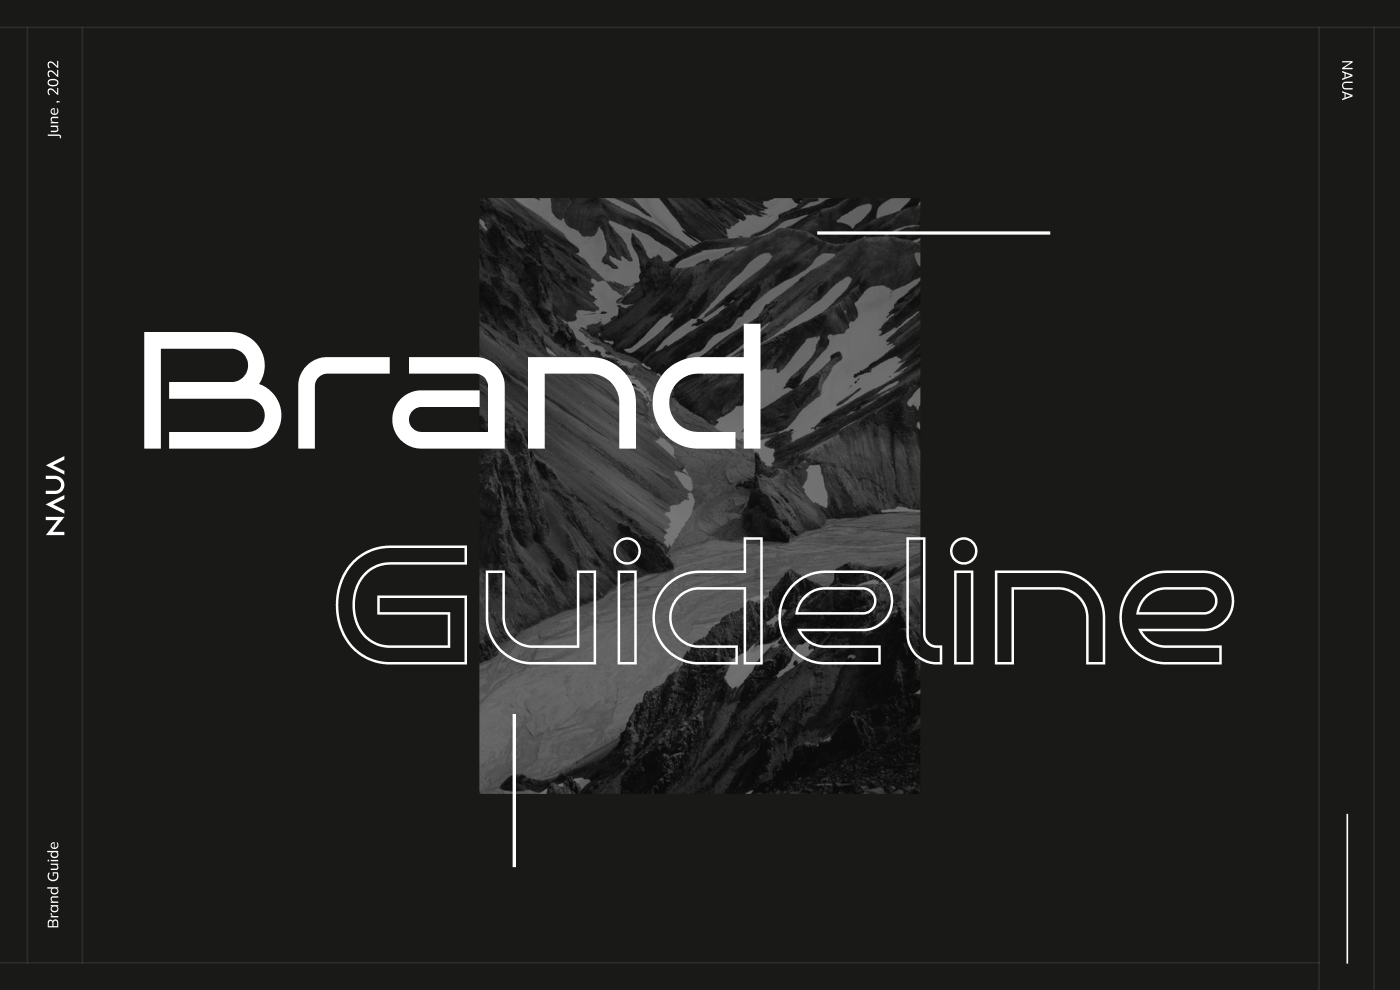 Brand Design brand identity branding  identity logo Logo Design logos Logotype typography   visual identity